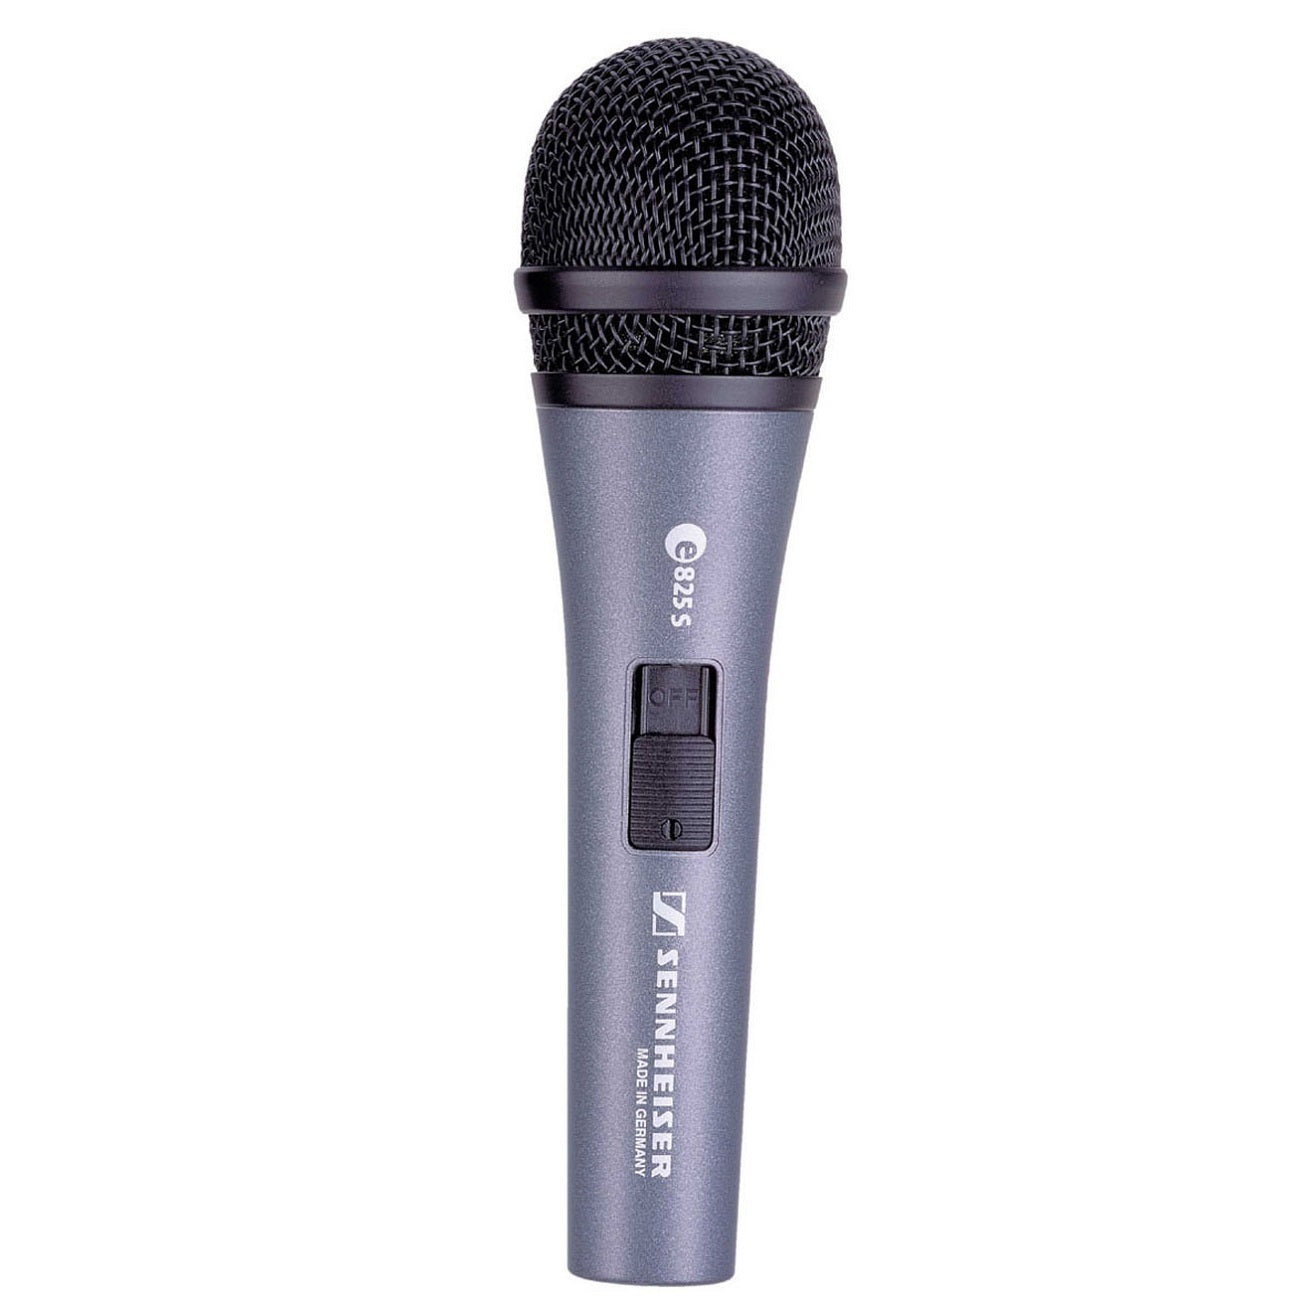 Sennheiser e 825-S Dynamic Microphone